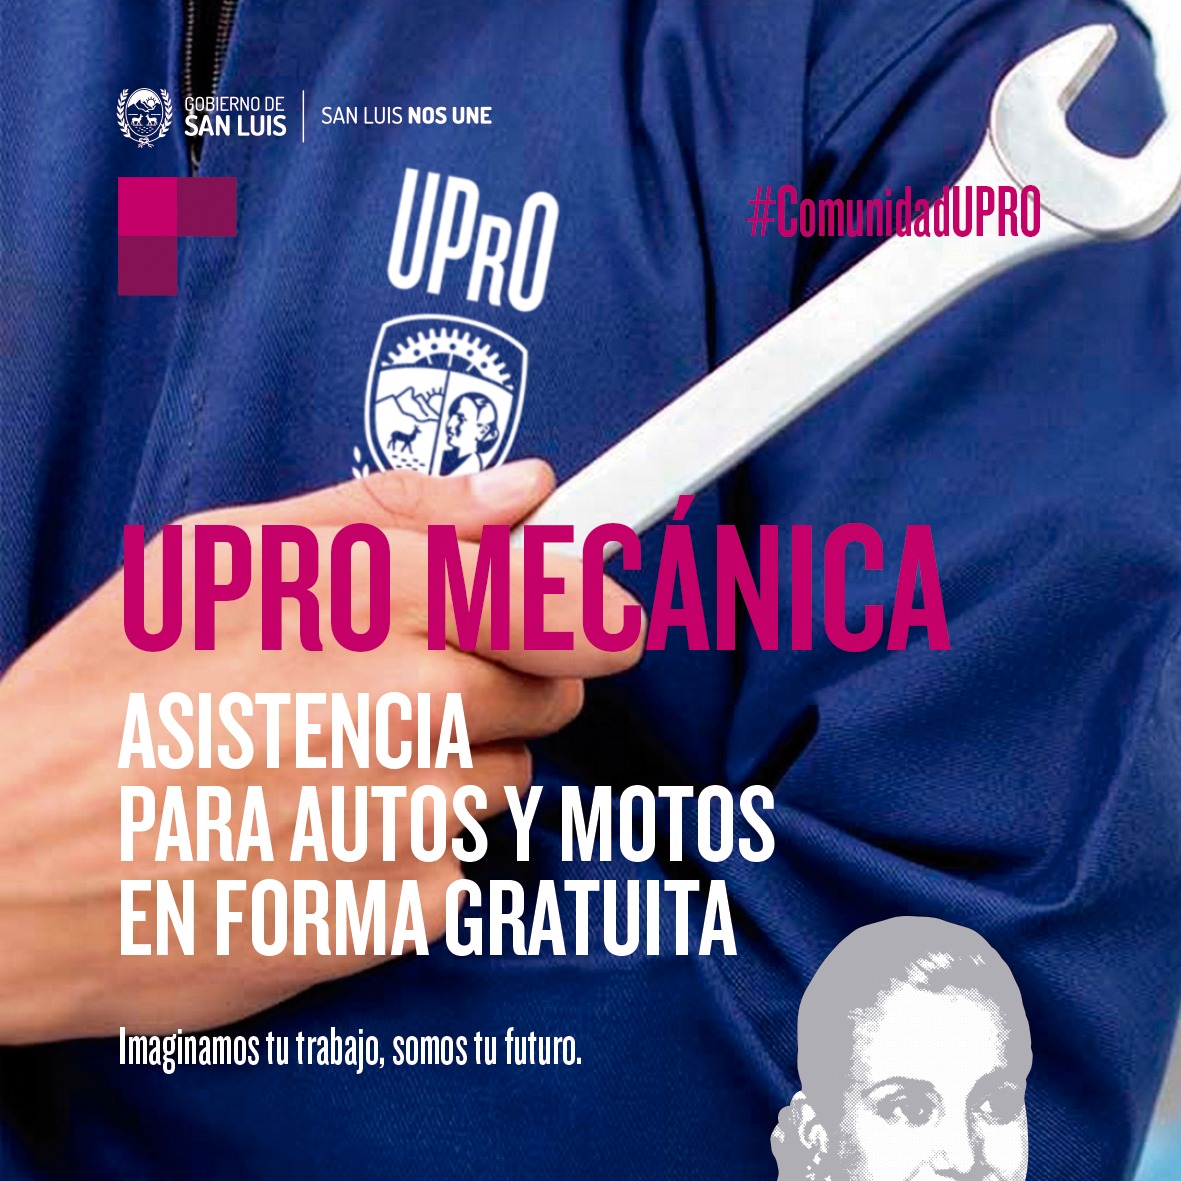 La UPrO ofrece asistencia mecánica gratuita para autos y motos